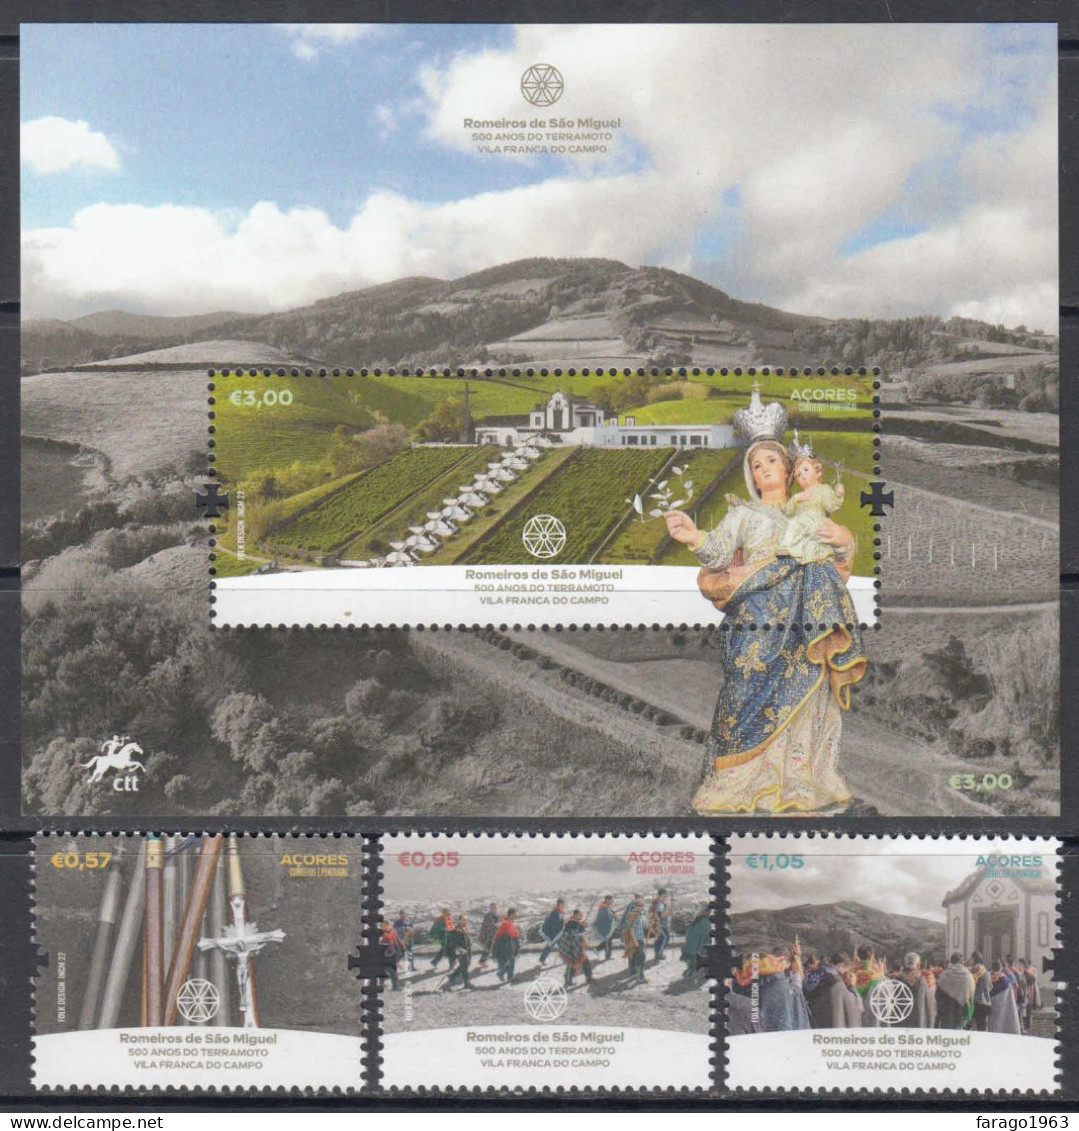 2022 Azores Acores Romeiros De Sao Miguel Complete Set Of 3 + Souvenir Sheet MNH @ BELOW FACE VALUE - Açores